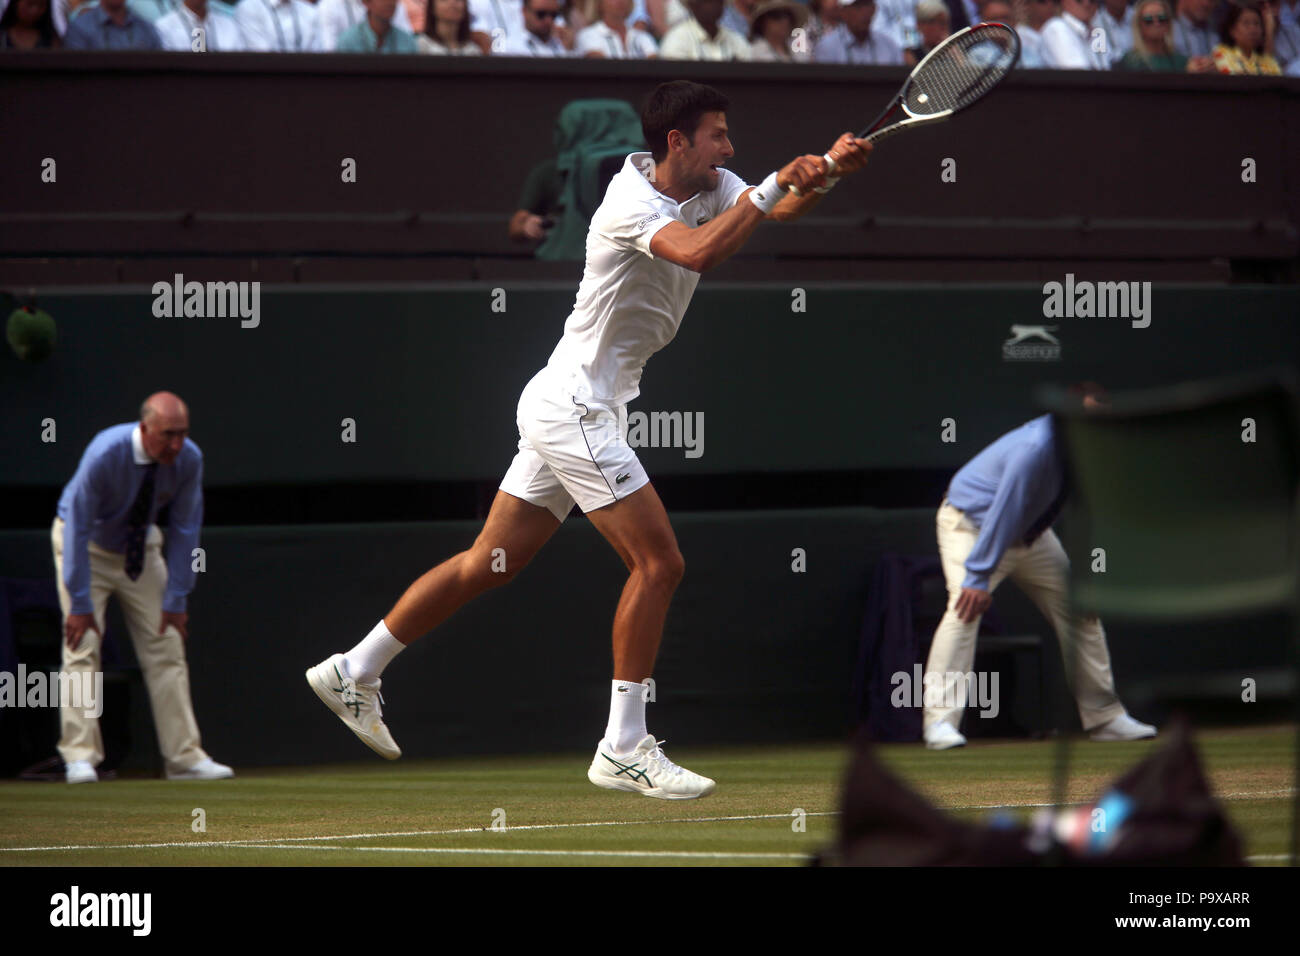 Londra, Inghilterra - Luglio 7, 2018. Wimbledon Tennis: Novak Djokovic durante il suo terzo round match contro la Gran Bretagna Kyle Edmund sul Centre Court di Wimbledon oggi. Foto Stock